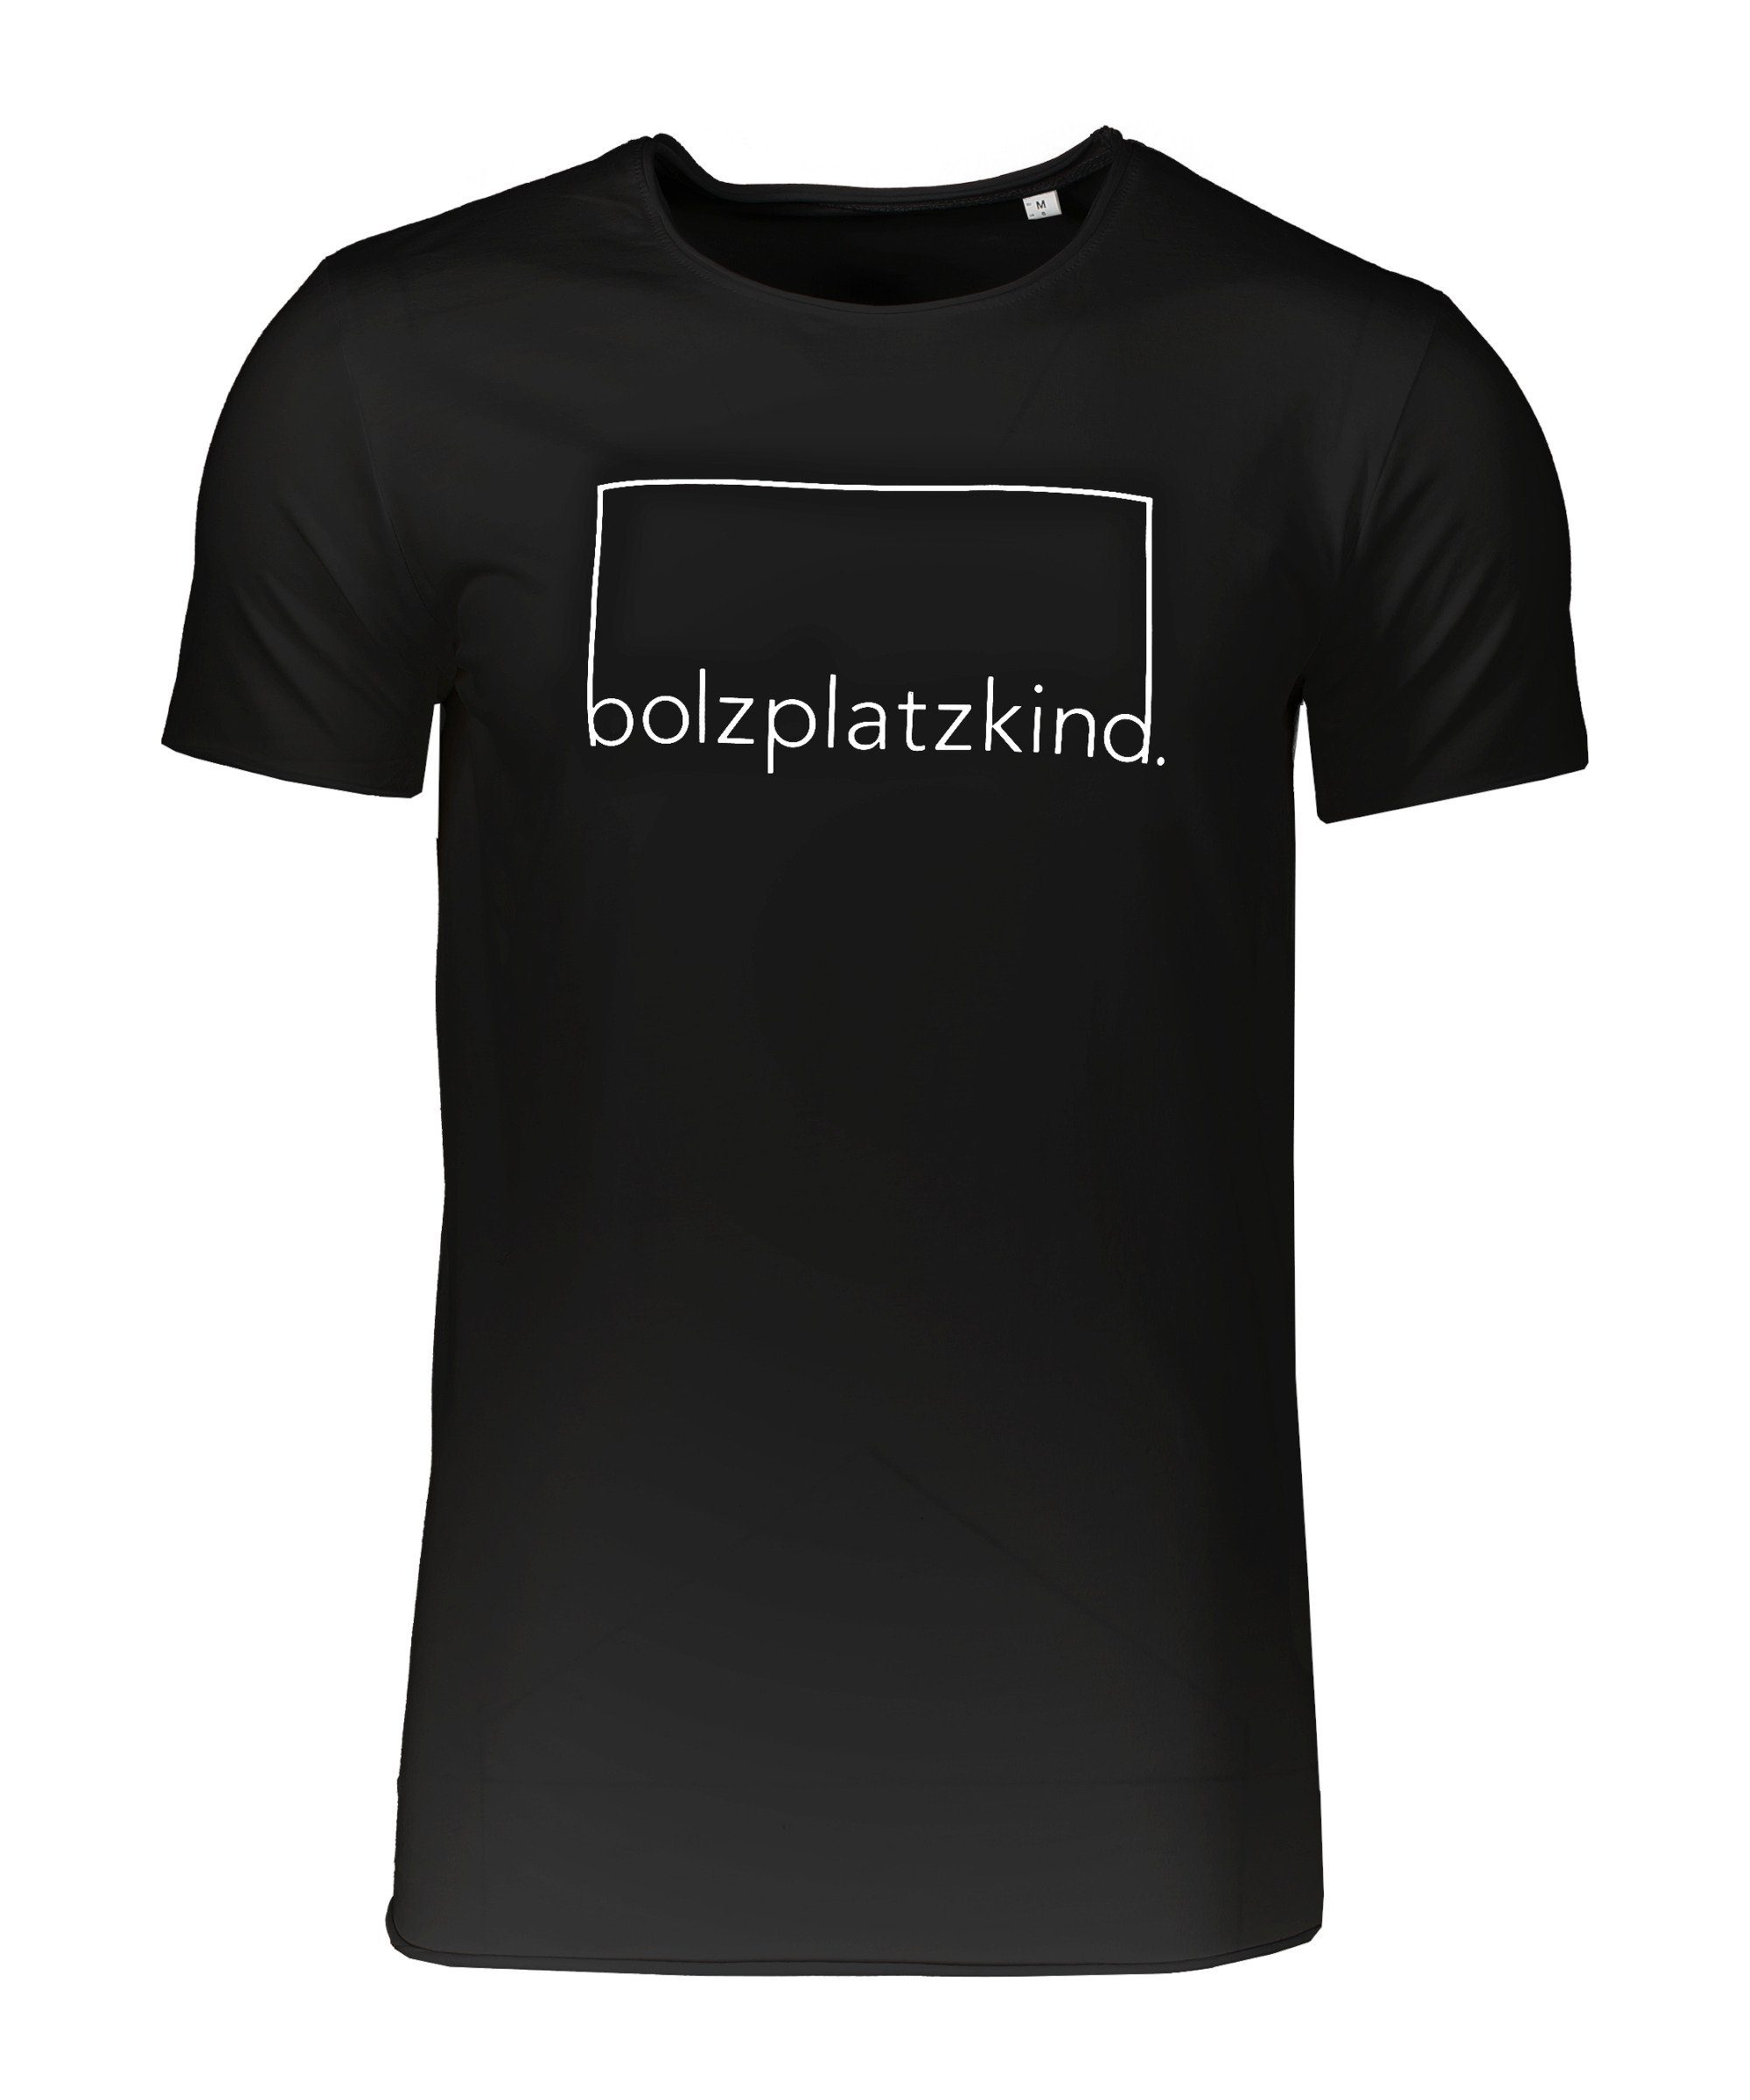 "Langholz" schwarz Longshirt Sweatshirt Bolzplatzkind